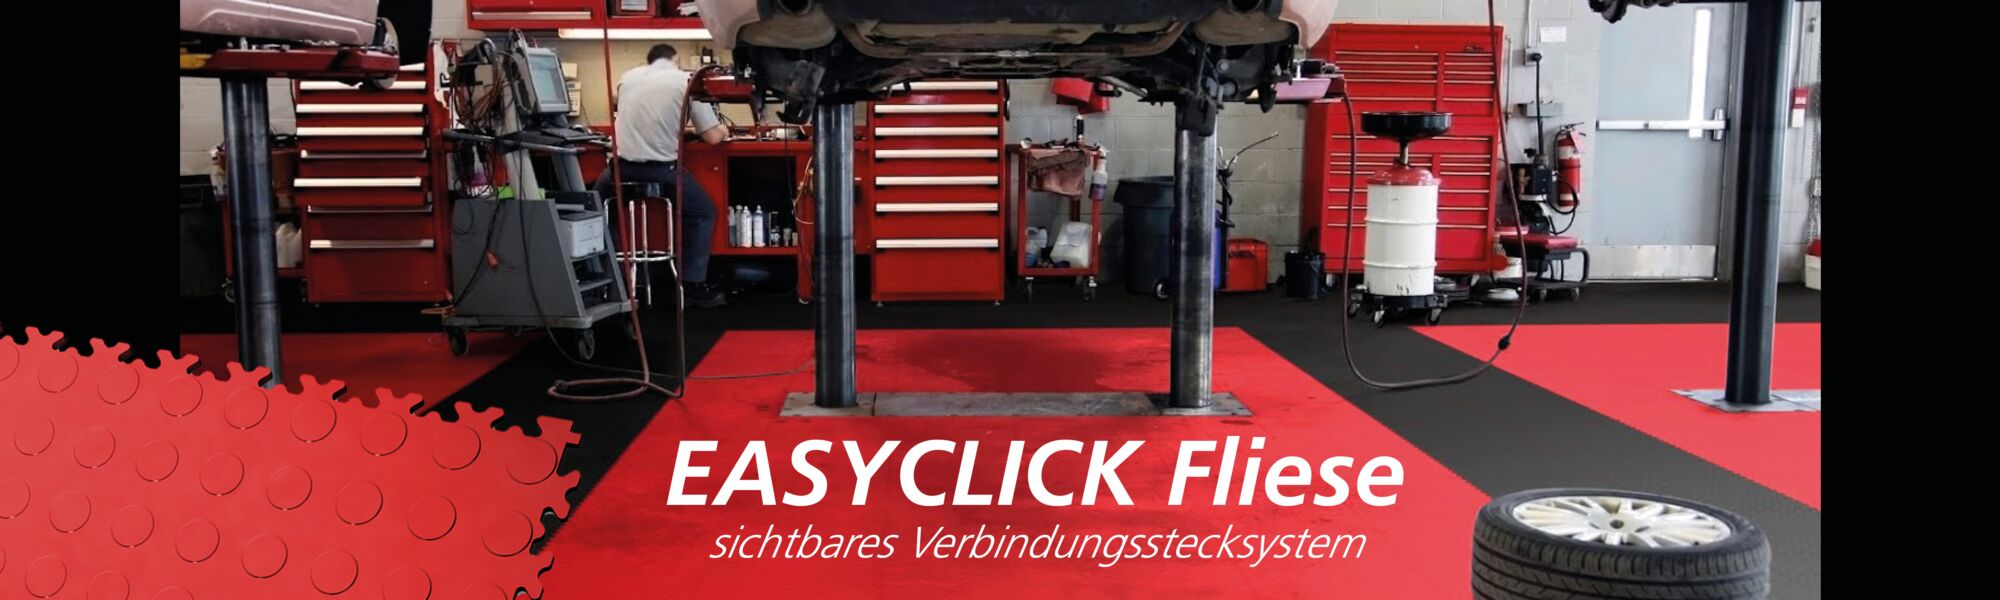 Fortelock PVC Bodenfliesen Easyclick